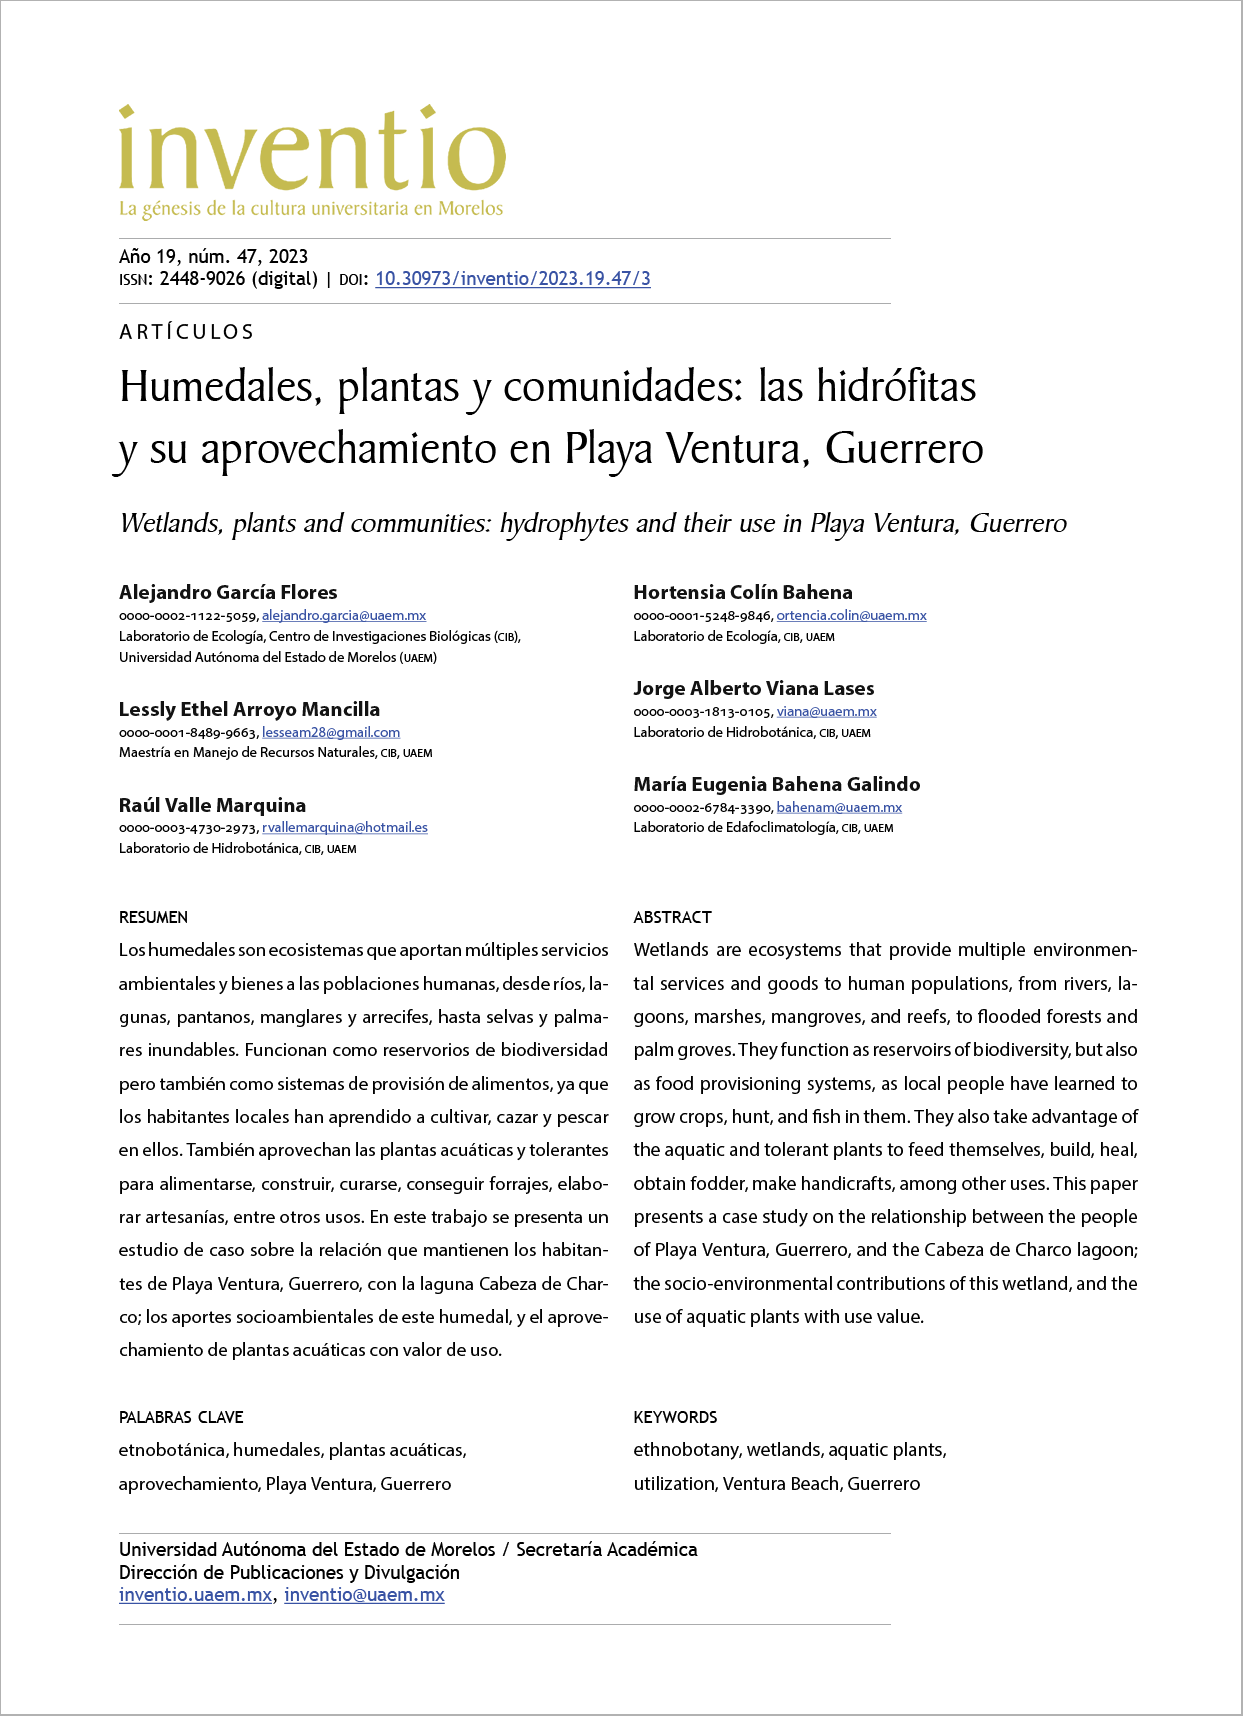 Humedales, plantas y comunidades: las hidrófitas y su aprovechamiento en Playa Ventura, Guerrero